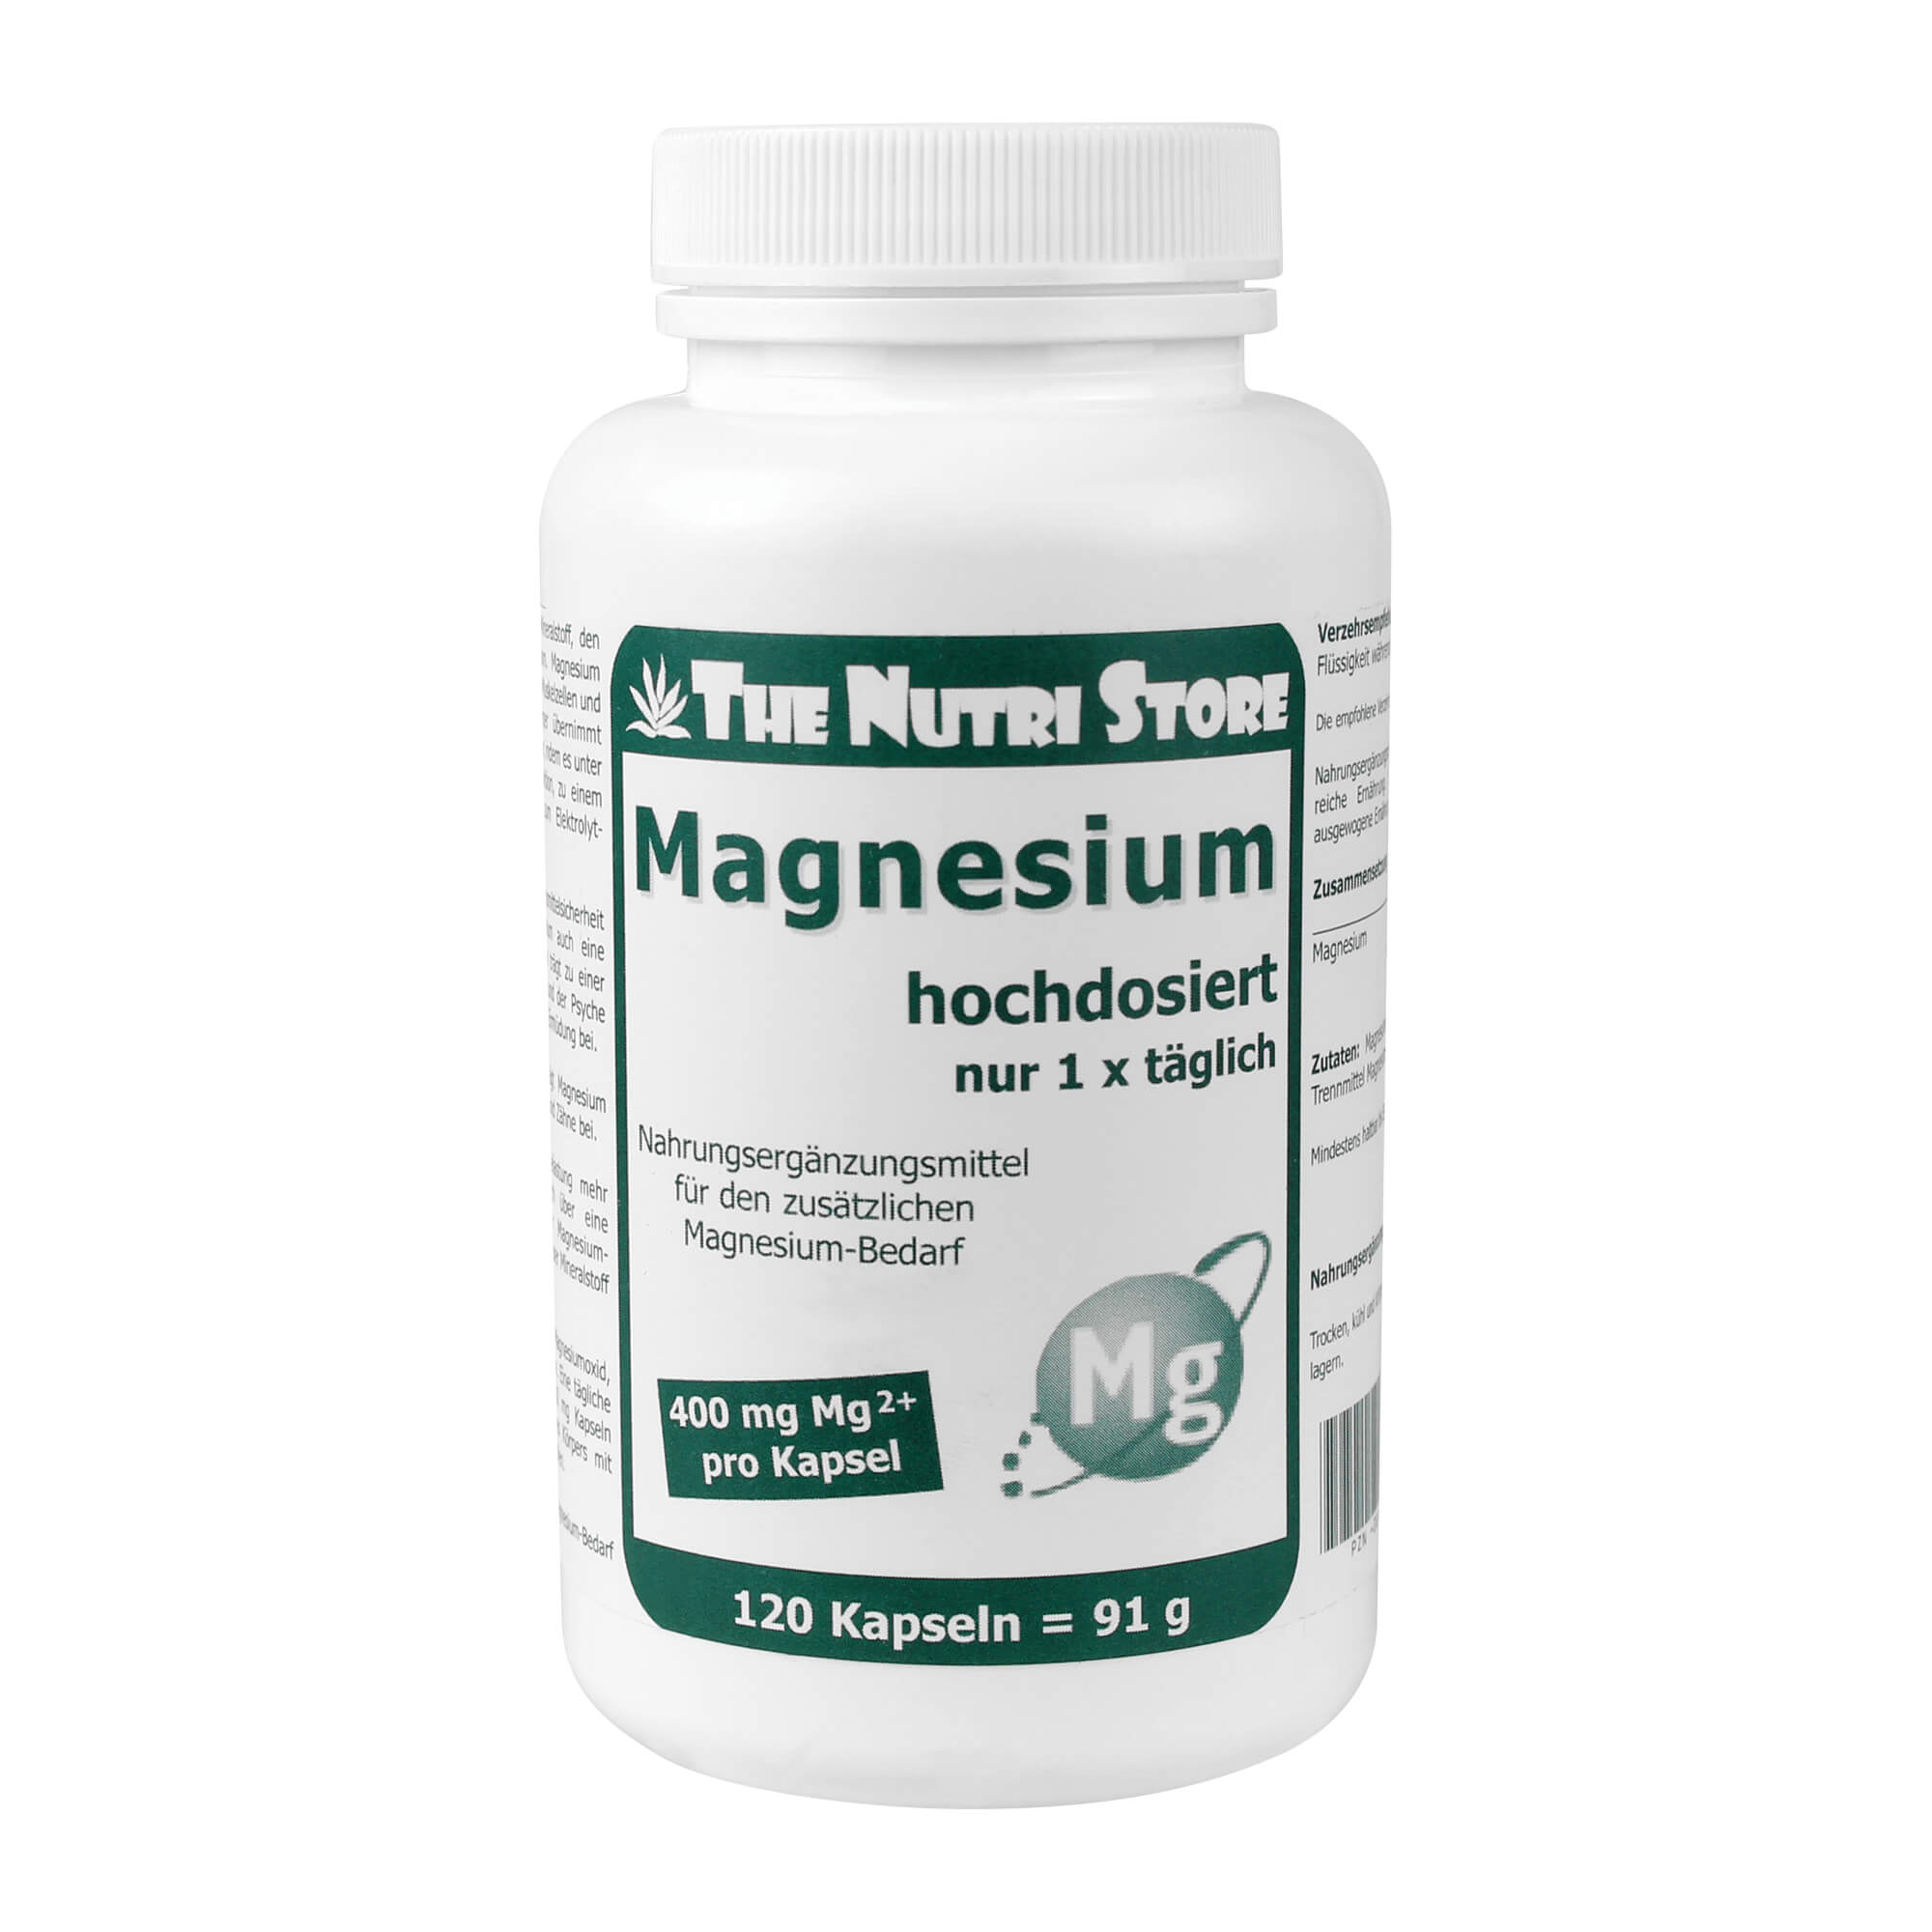 Nahrungsergänzungsmittel für den zusätzlichen Magnesium-Bedarf.